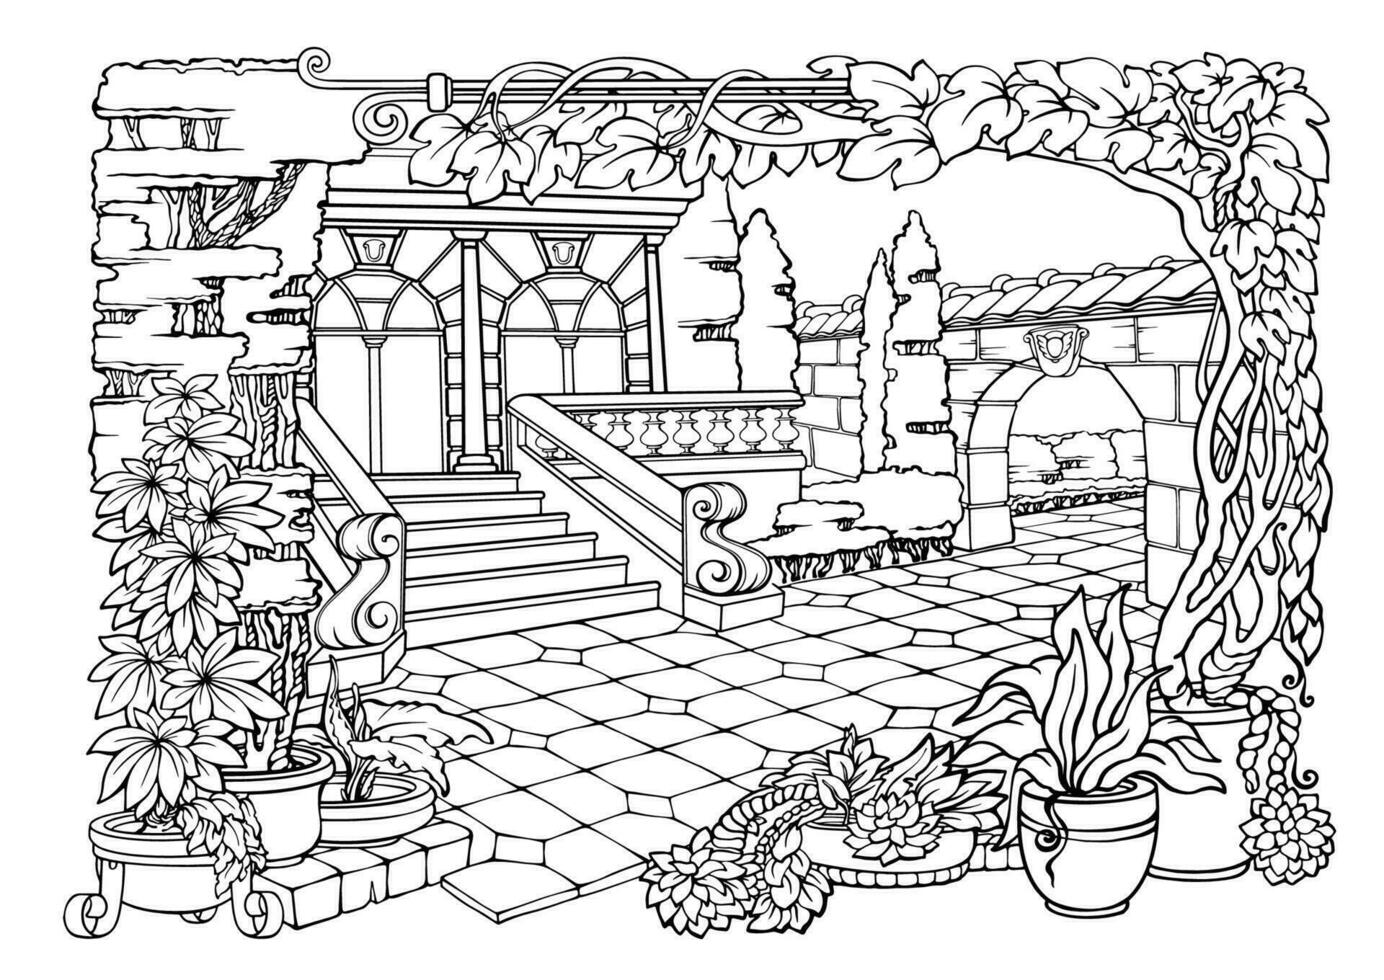 Färbung Seite schön Garten. Terrasse, exotisch Pflanzen. detailliert Vektor Illustration.